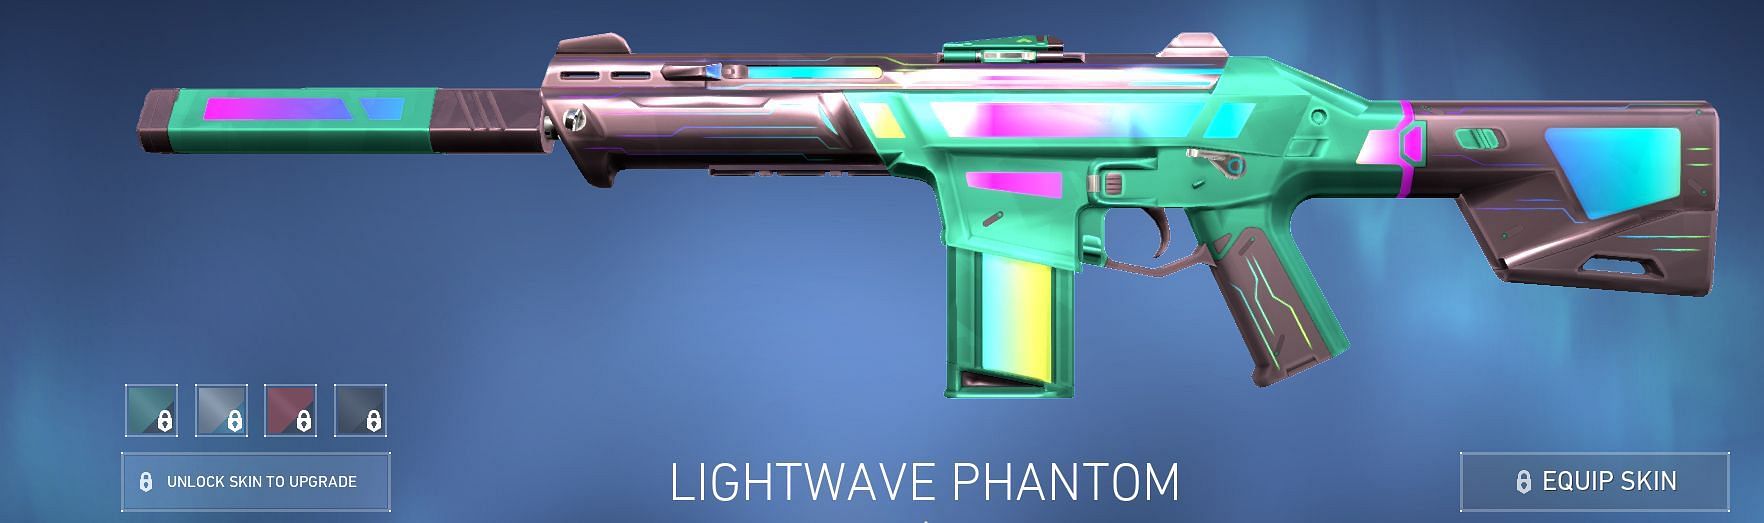 Lightwave Phantom (Image via Riot Games)